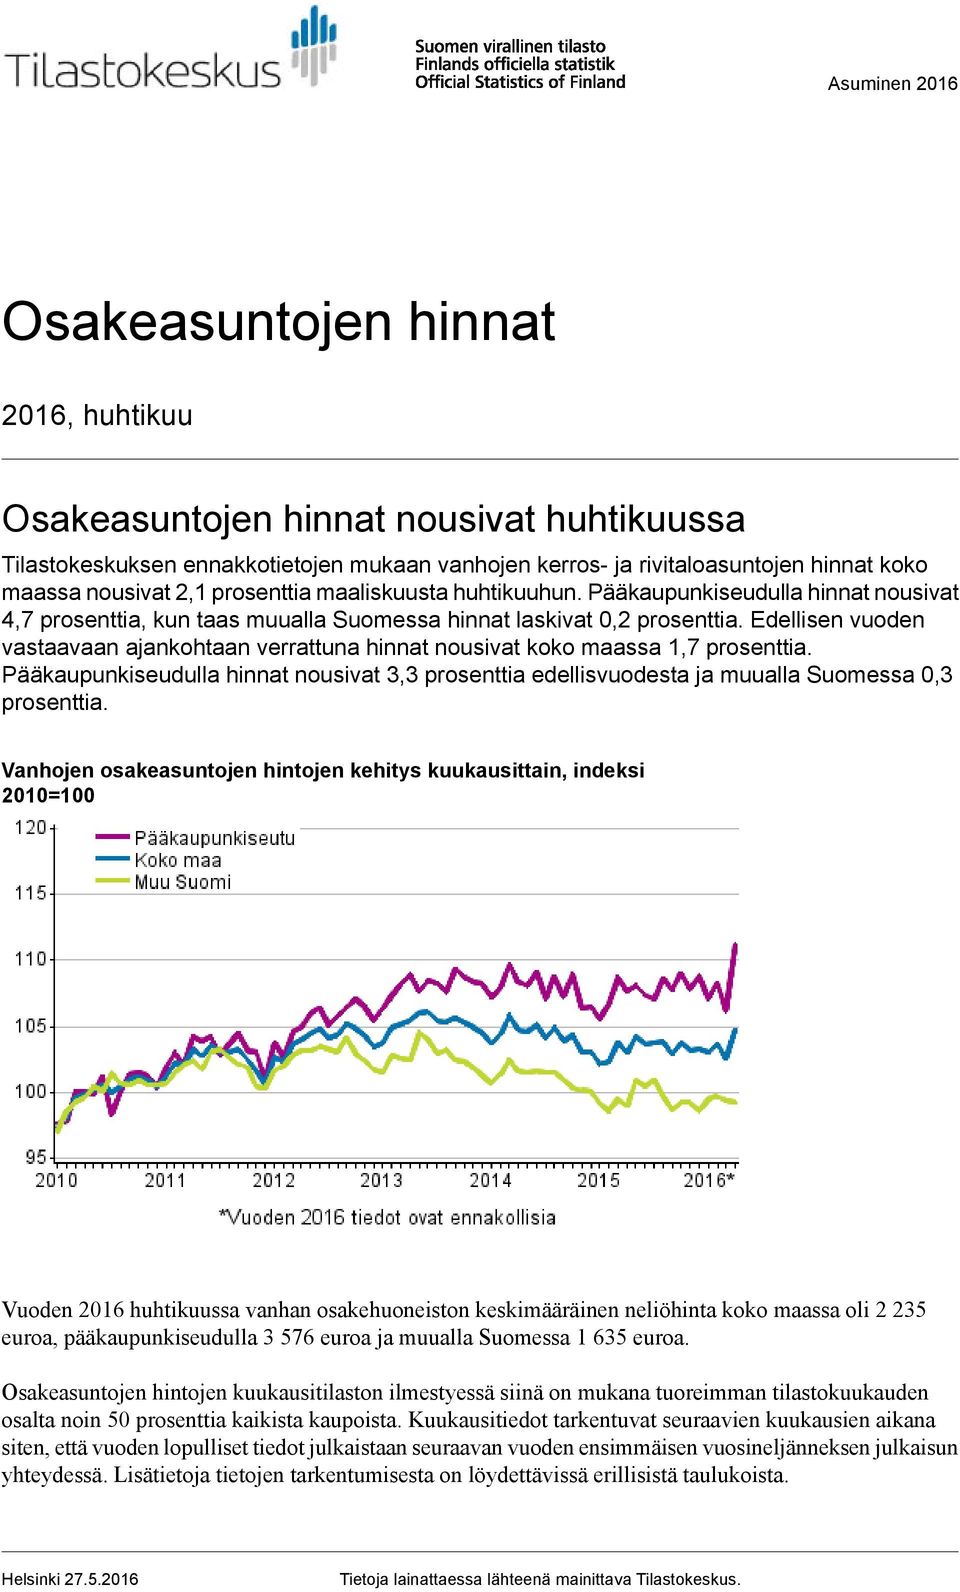 Edellisen vuoden vastaavaan ajankohtaan verrattuna hinnat nousivat koko maassa 1,7 prosenttia. Pääkaupunkiseudulla hinnat nousivat 3,3 prosenttia edellisvuodesta ja muualla Suomessa 0,3 prosenttia.